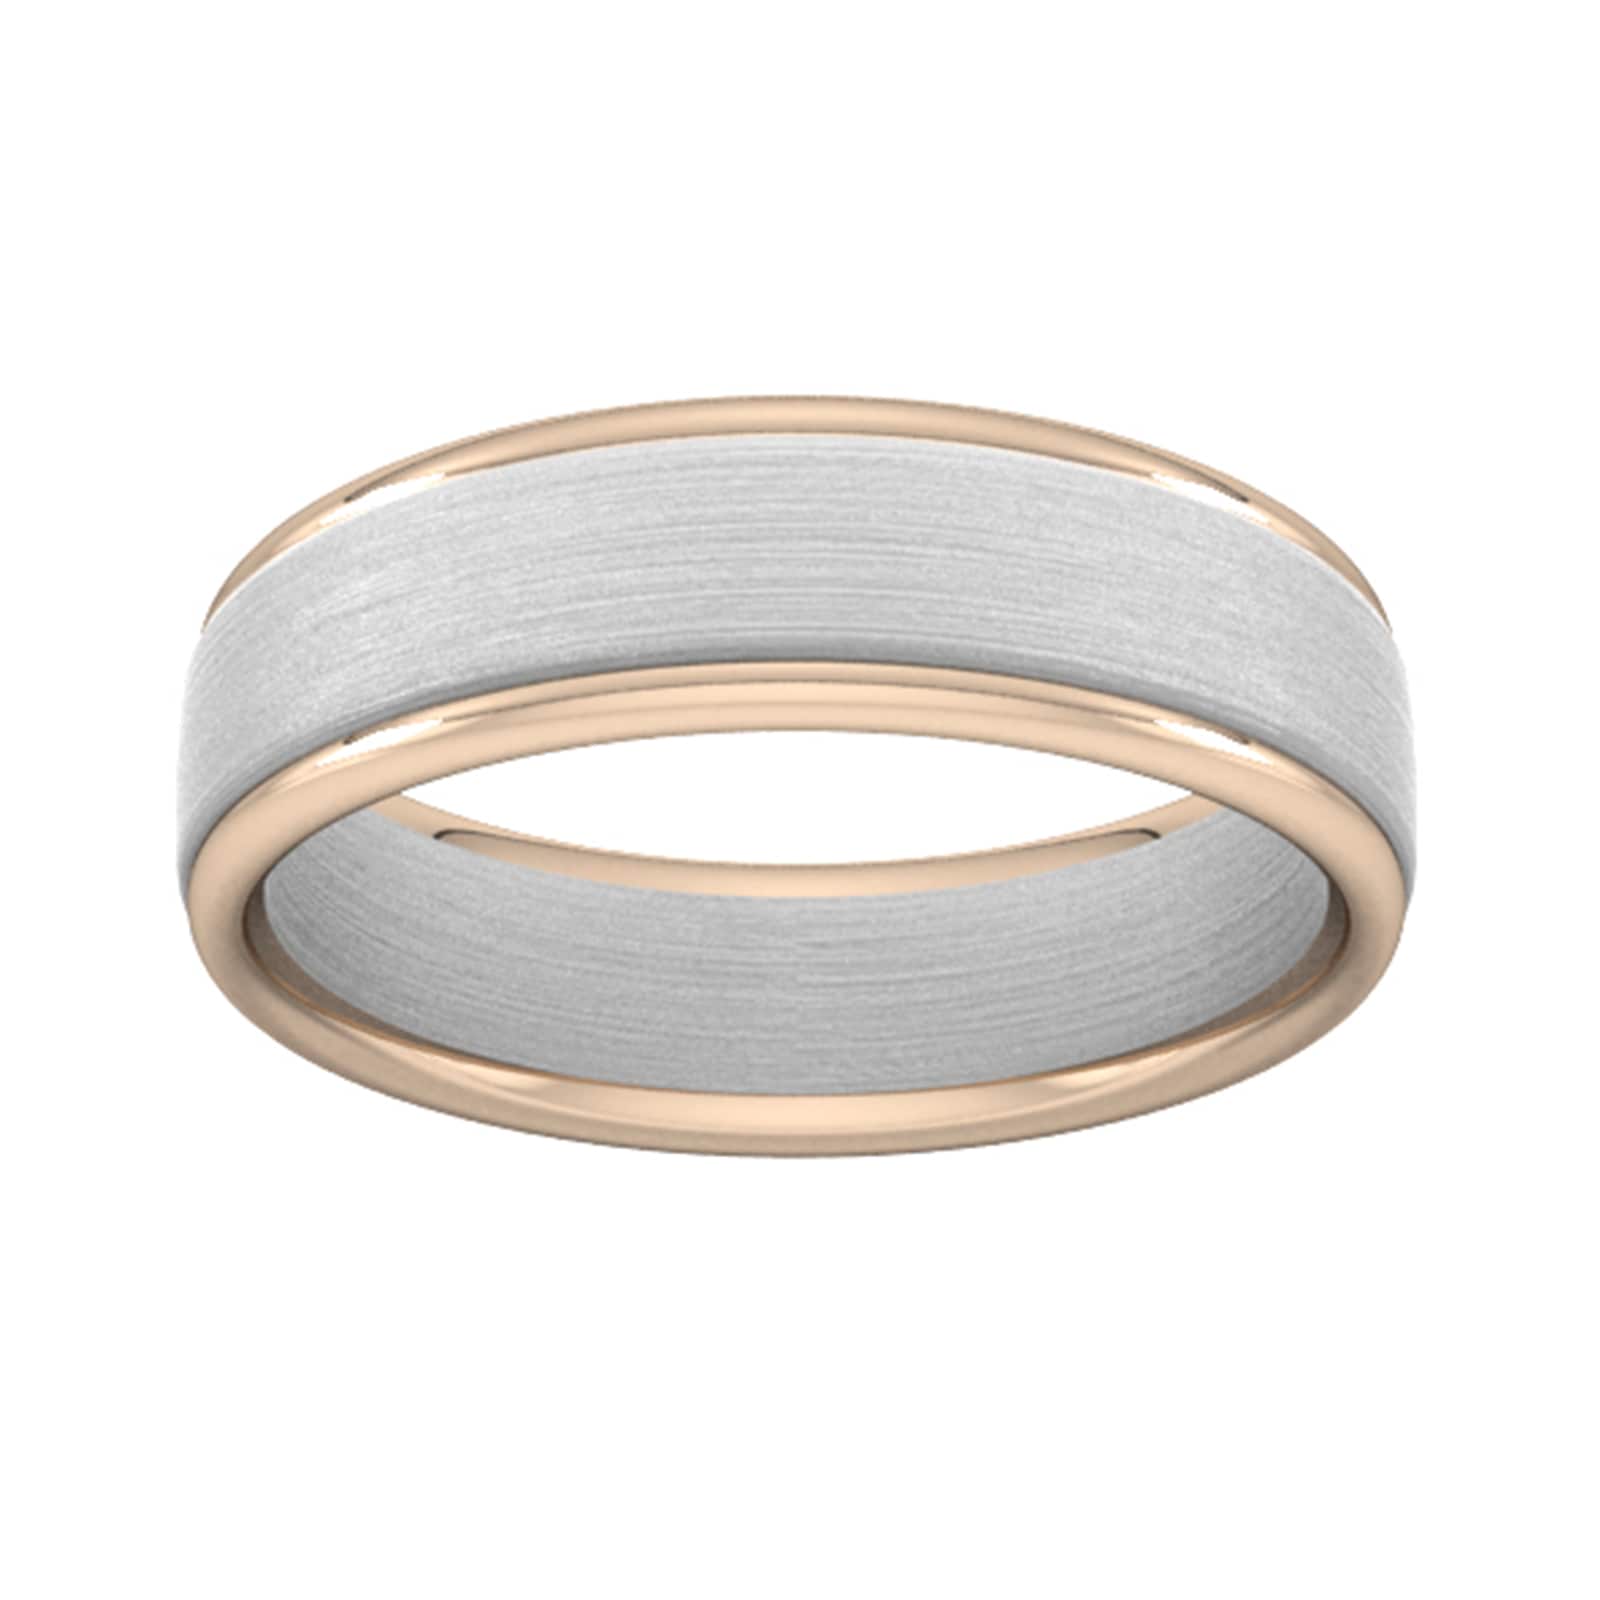 6mm Wedding Ring In 18 Carat White & Rose Gold - Ring Size L